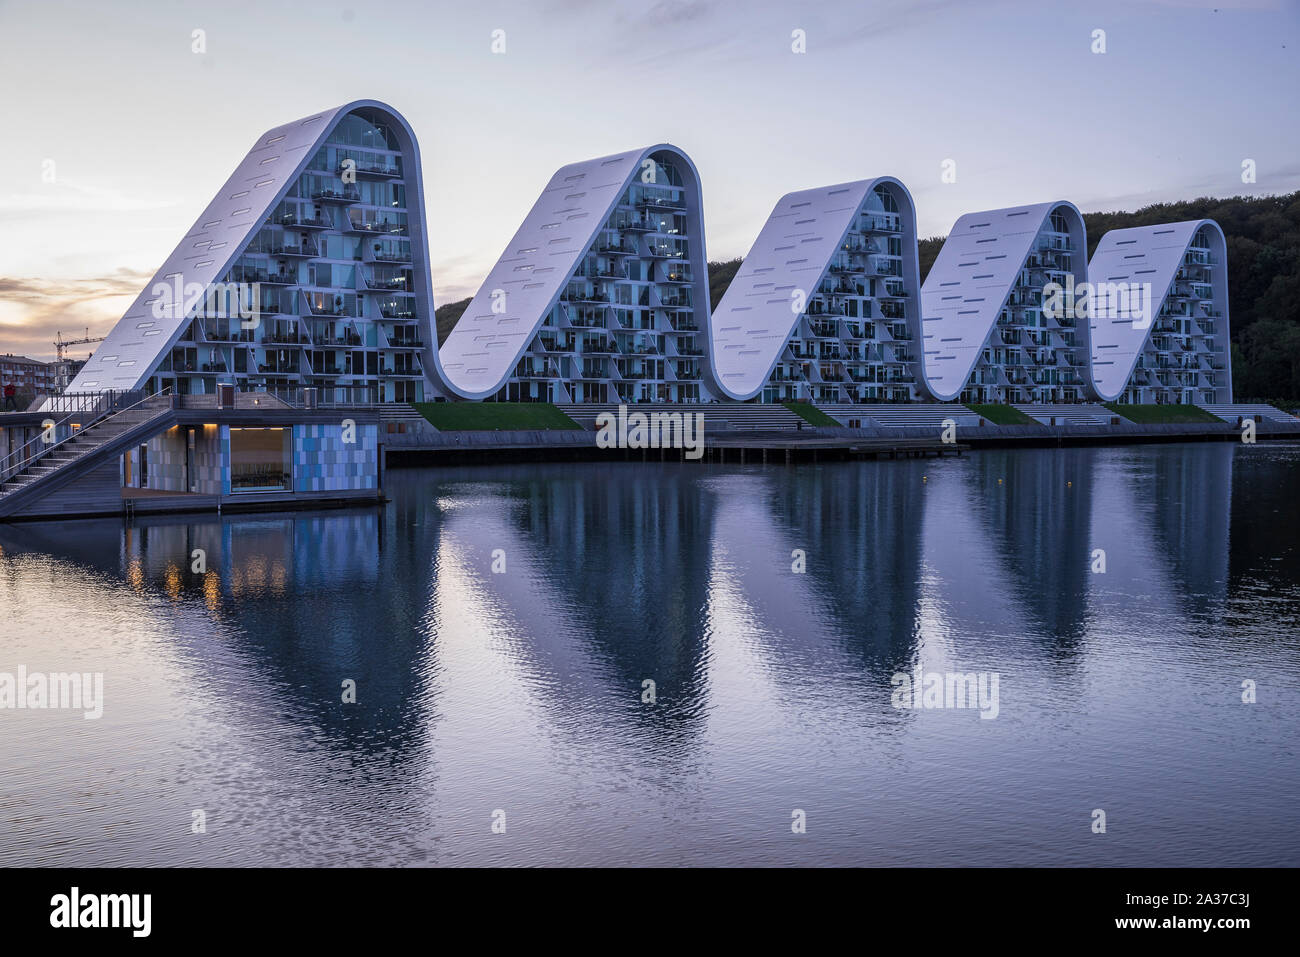 Bølgen – die Welle, moderne Architektur in Vejle, Dänemark, Europa Stock Photo